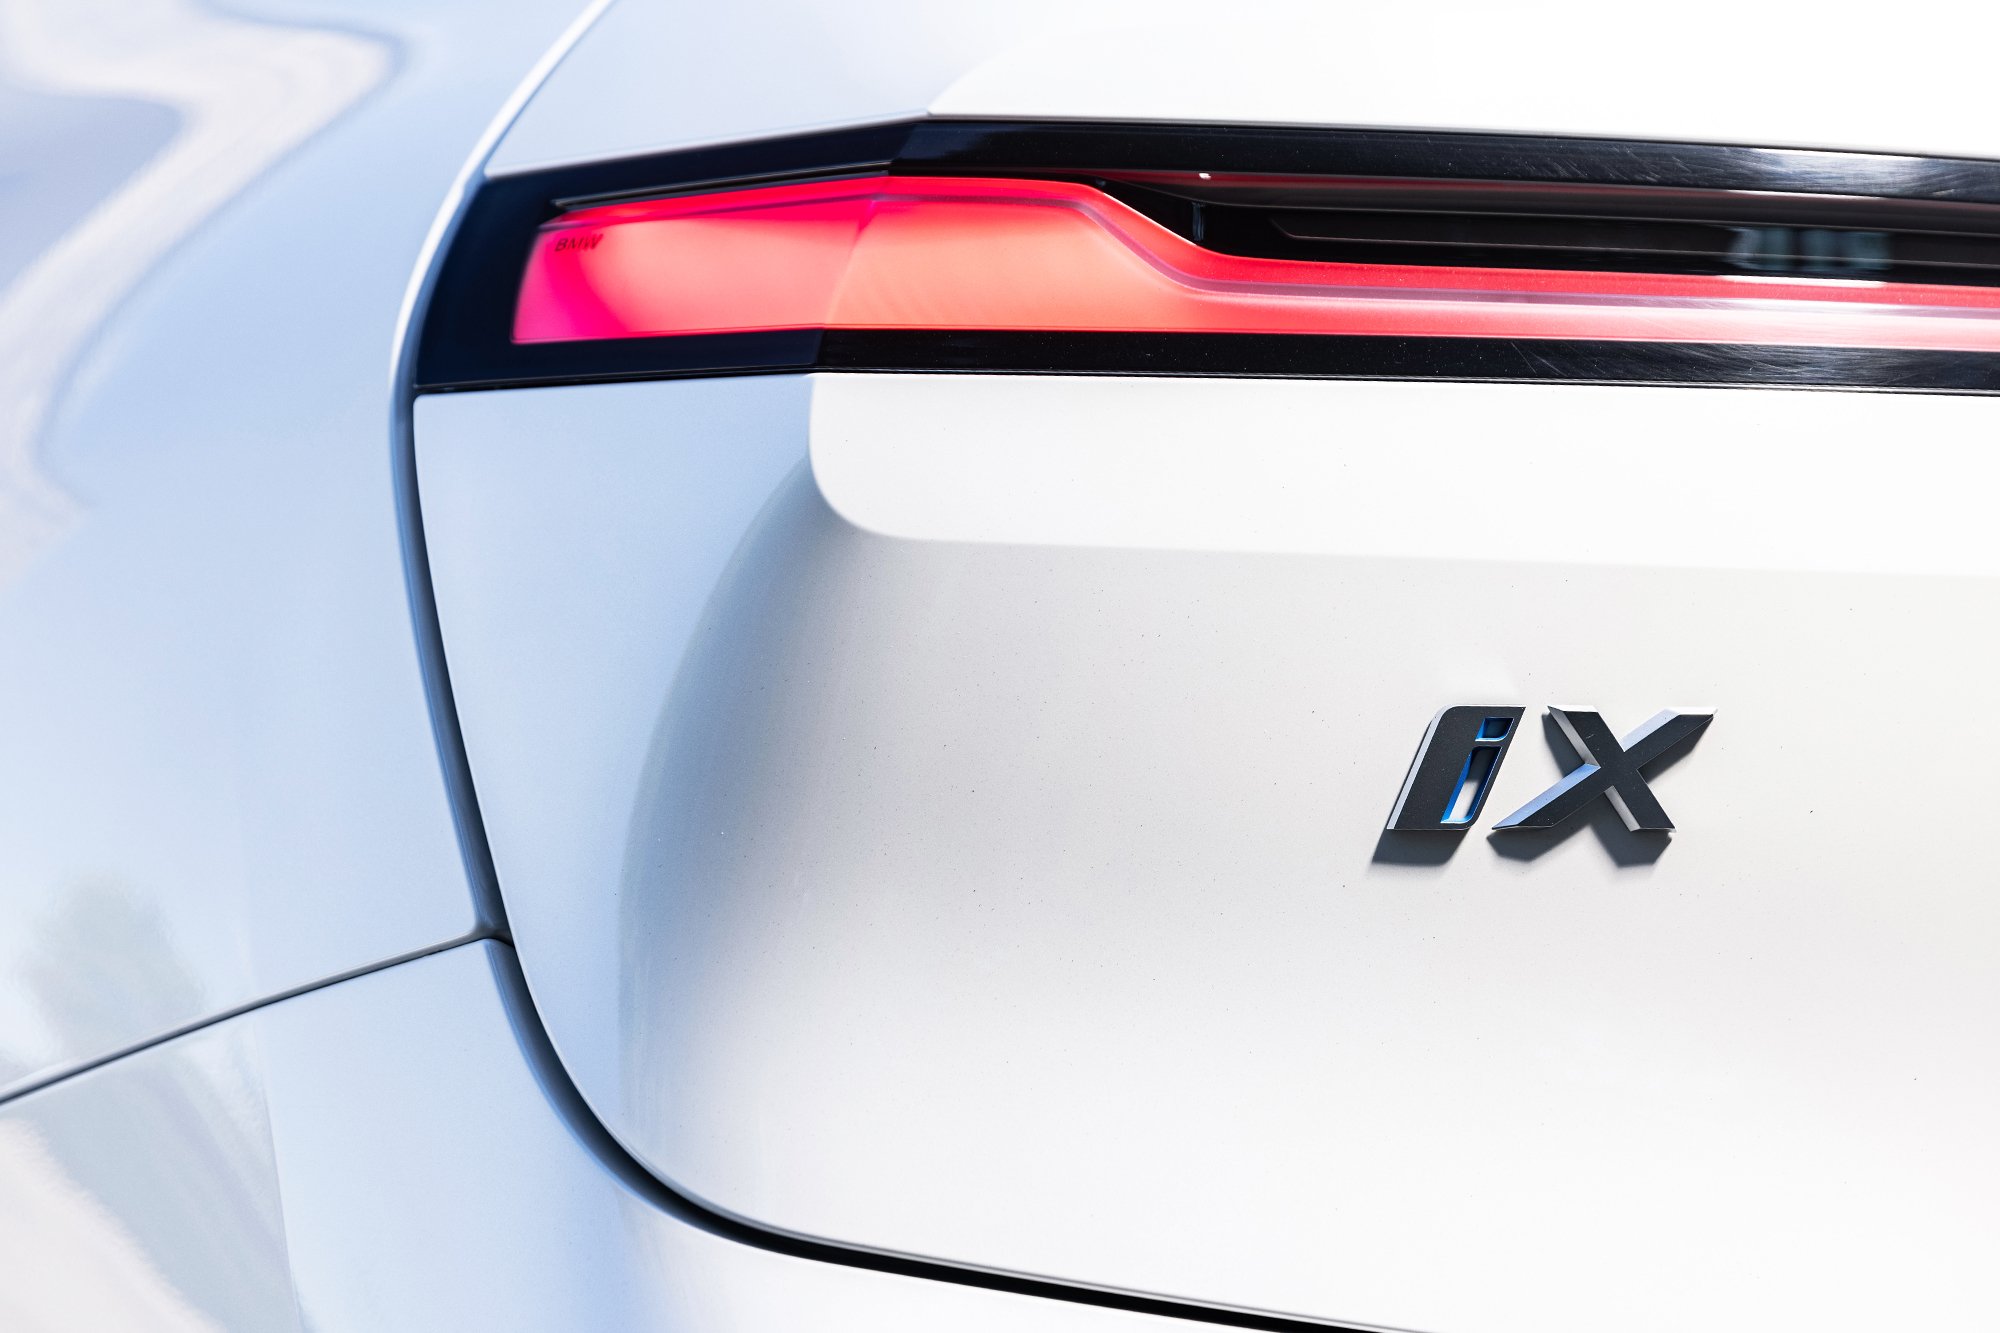 The futuristic rear lights of the new BMW iX xDrive50